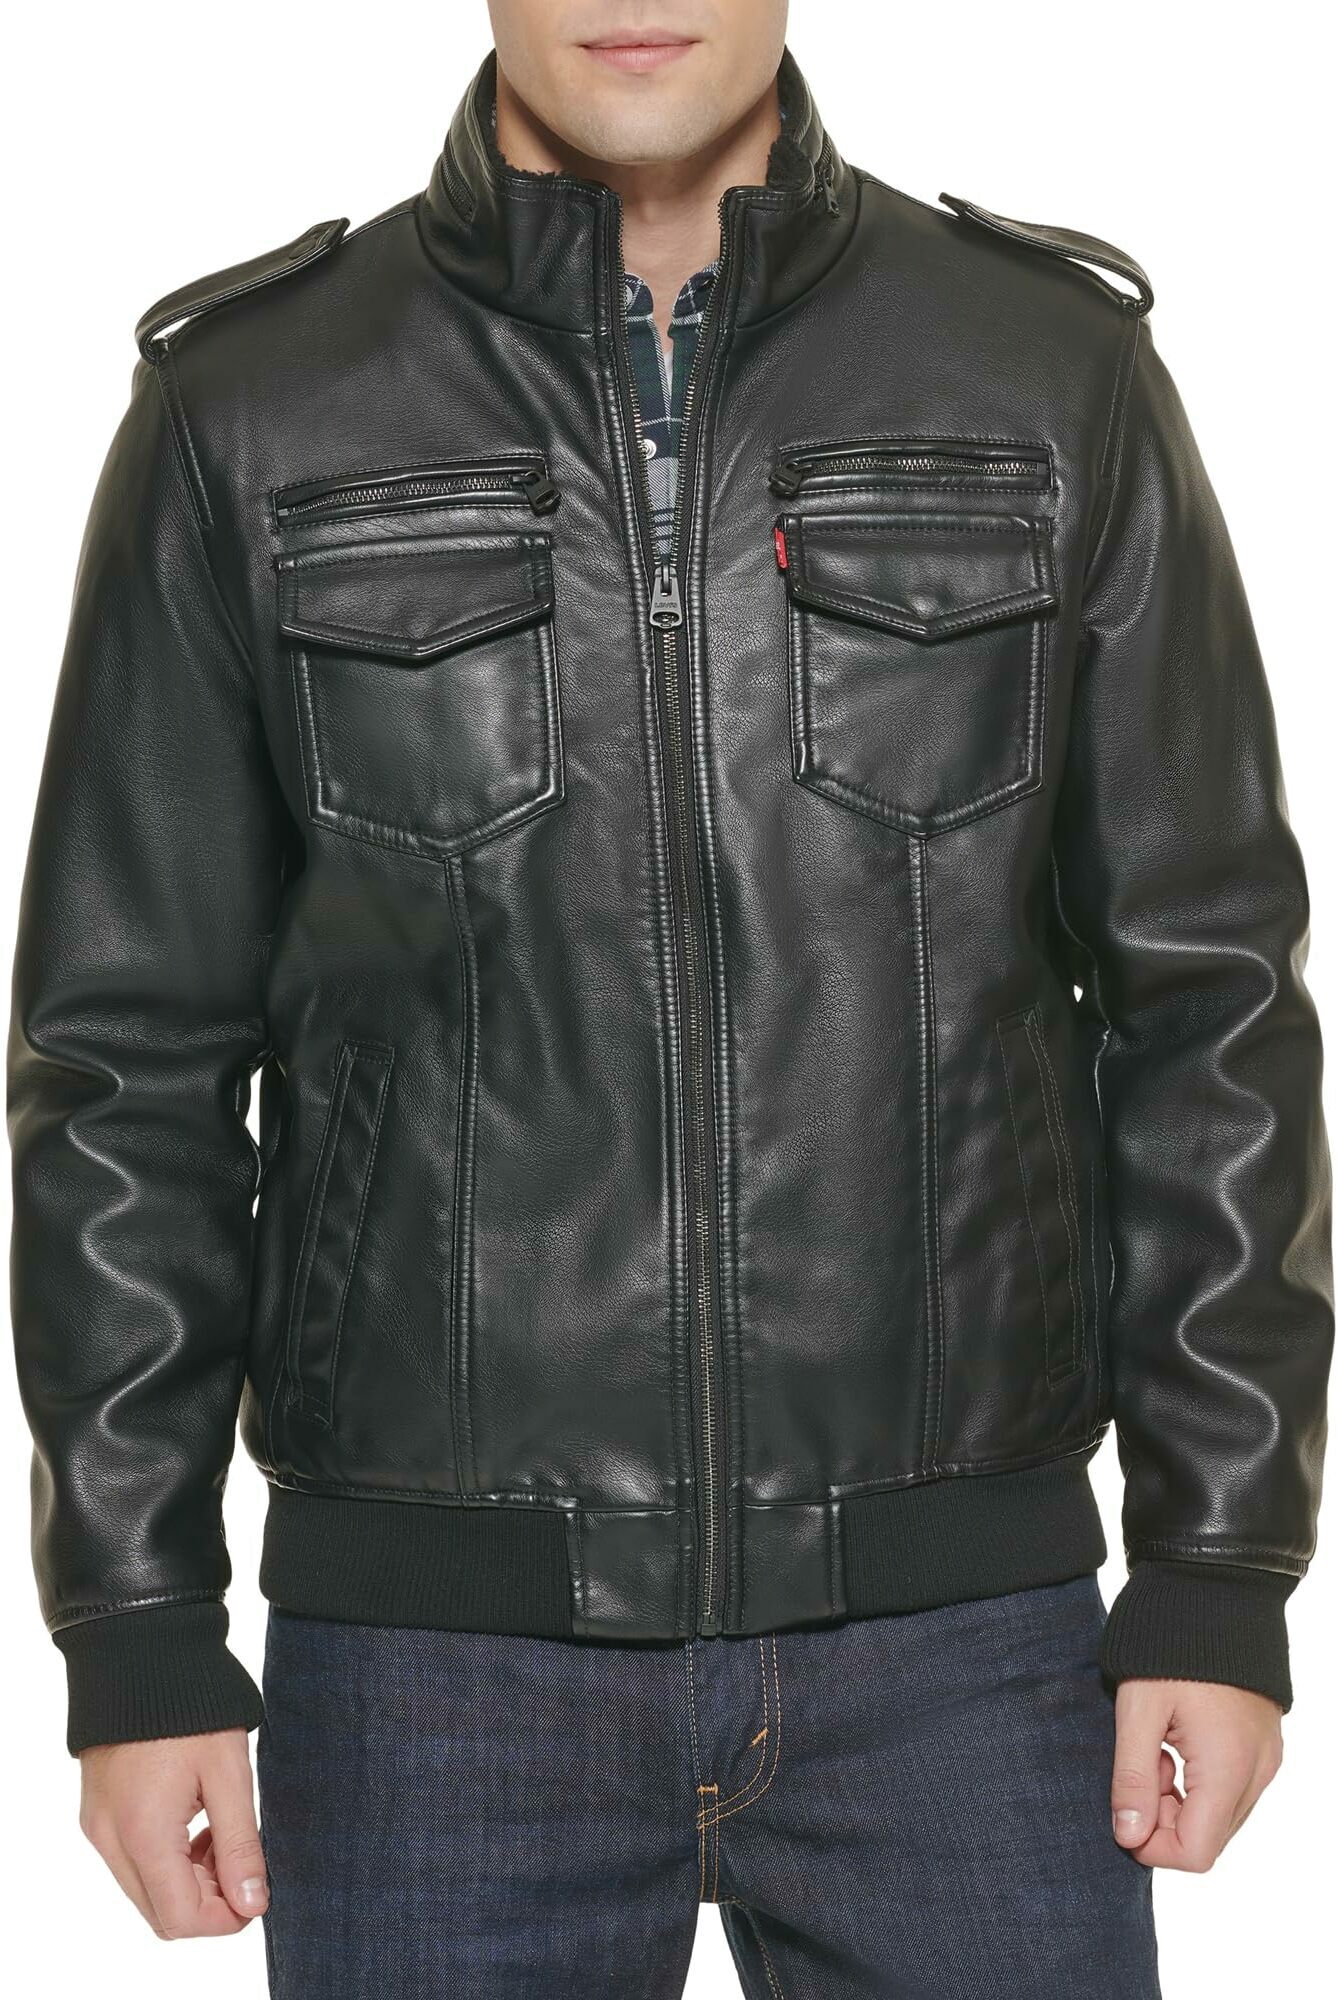 Кожаная куртка мужская Levi's LM8RU476-BLK черная L